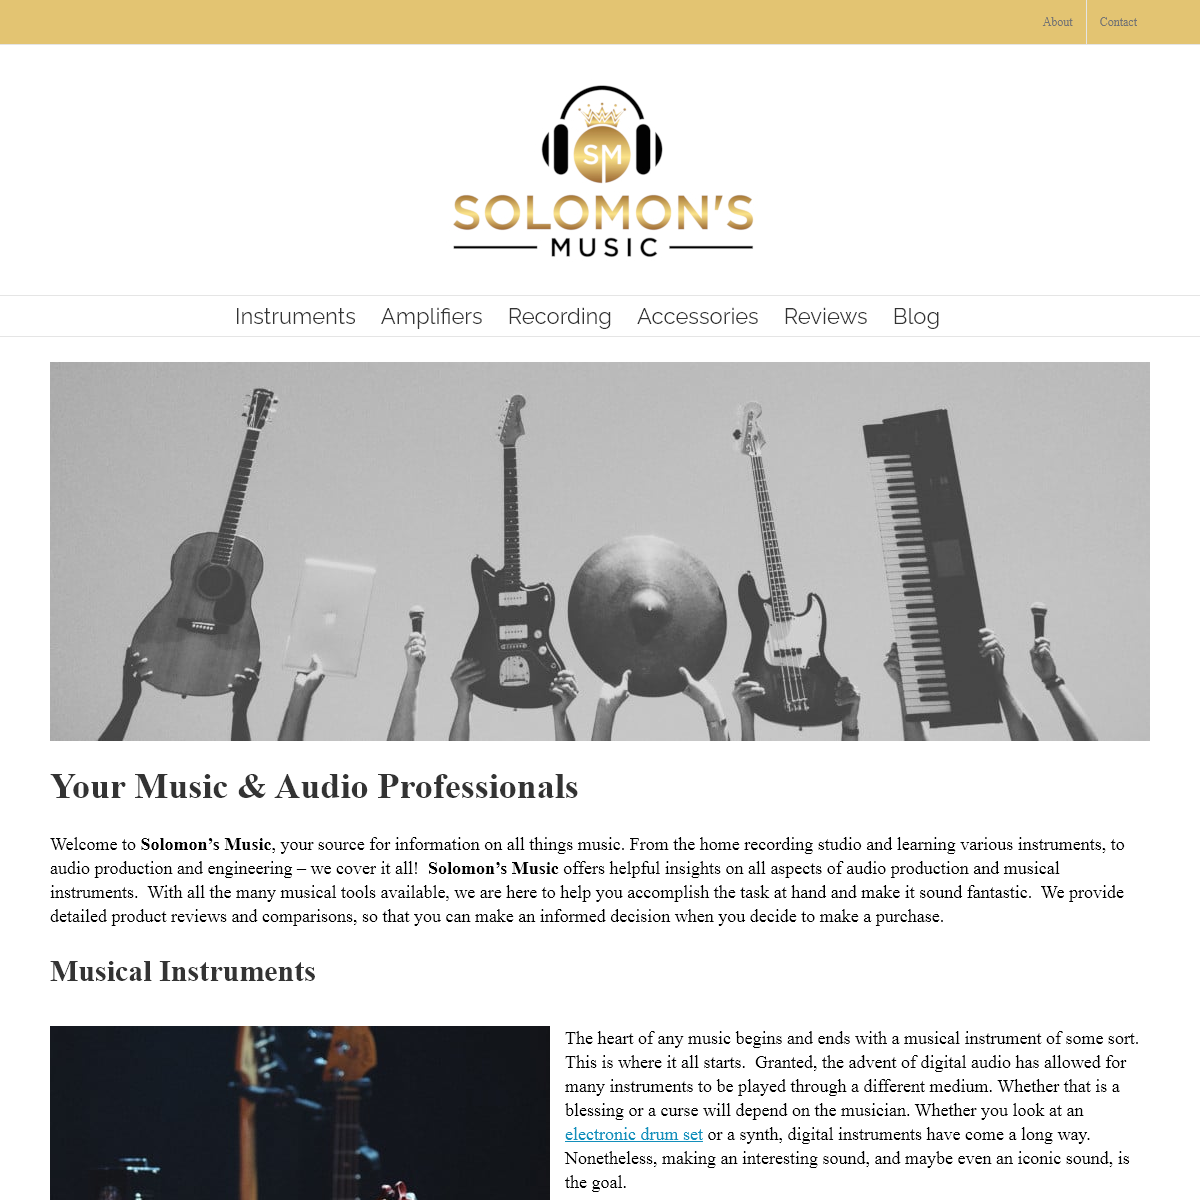 Music & Audio Professionals